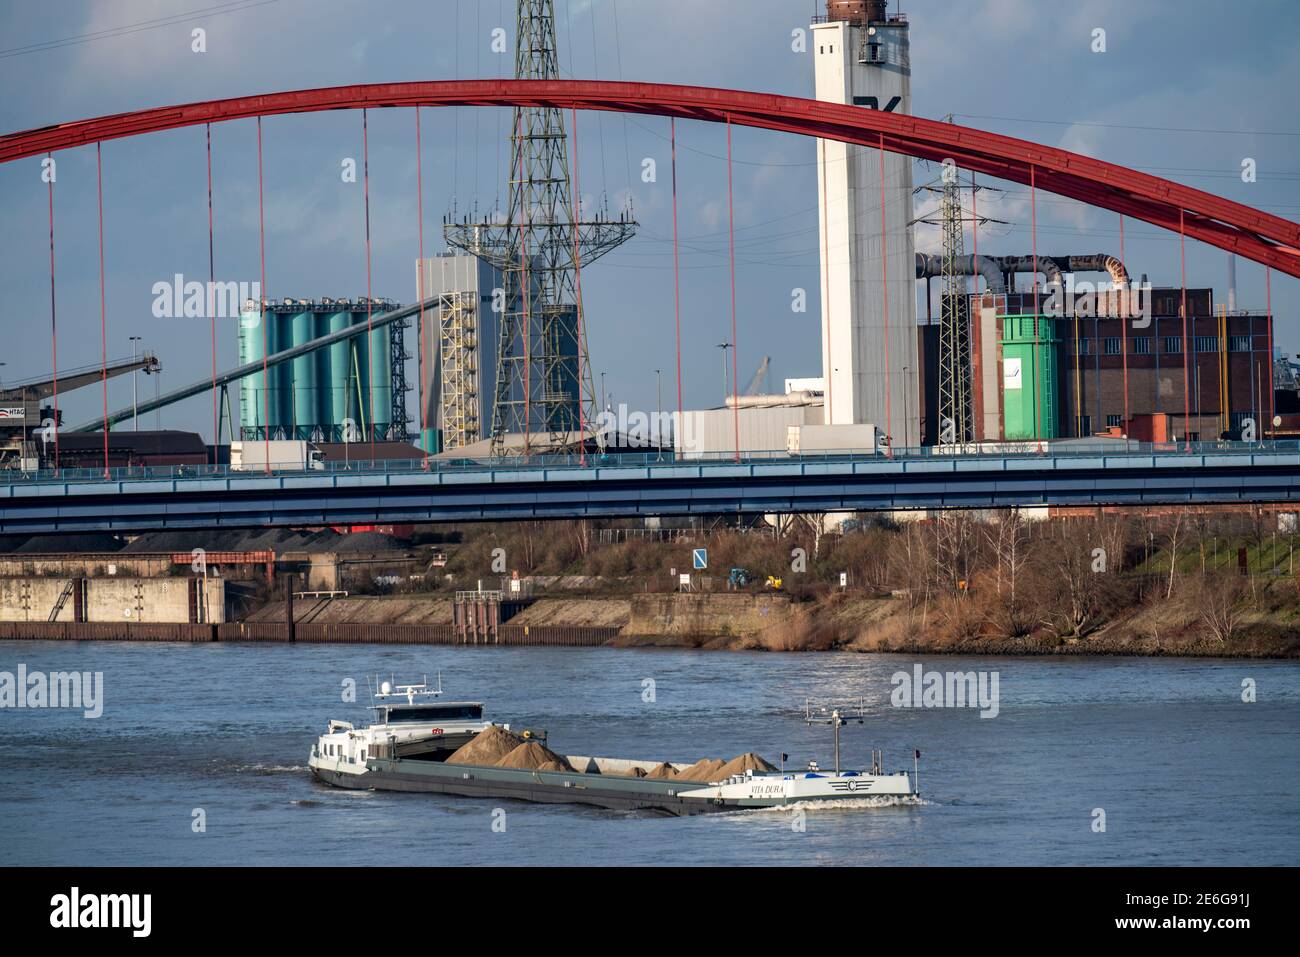 Brücke der Solidarität, Straßenbrücke zwischen den Landkreisen Rheinhausen und Hochfeld, über den Rhein, in Duisburg, NRW, Deutschland Stockfoto